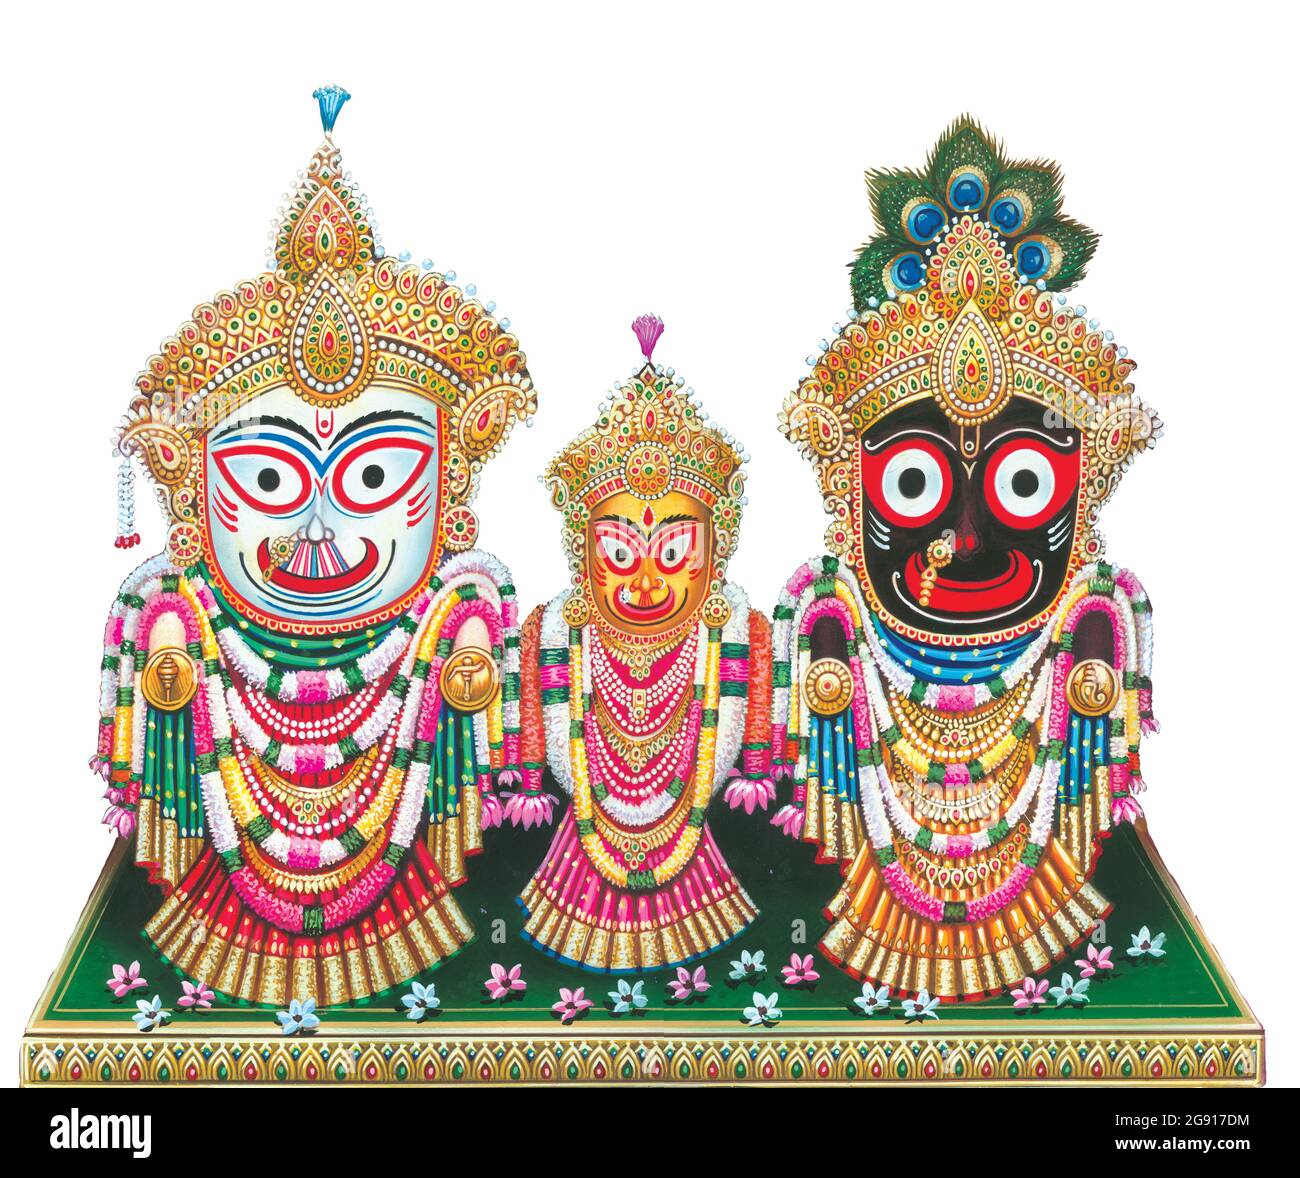 Lord Jagannath Wallpapers - Top Những Hình Ảnh Đẹp